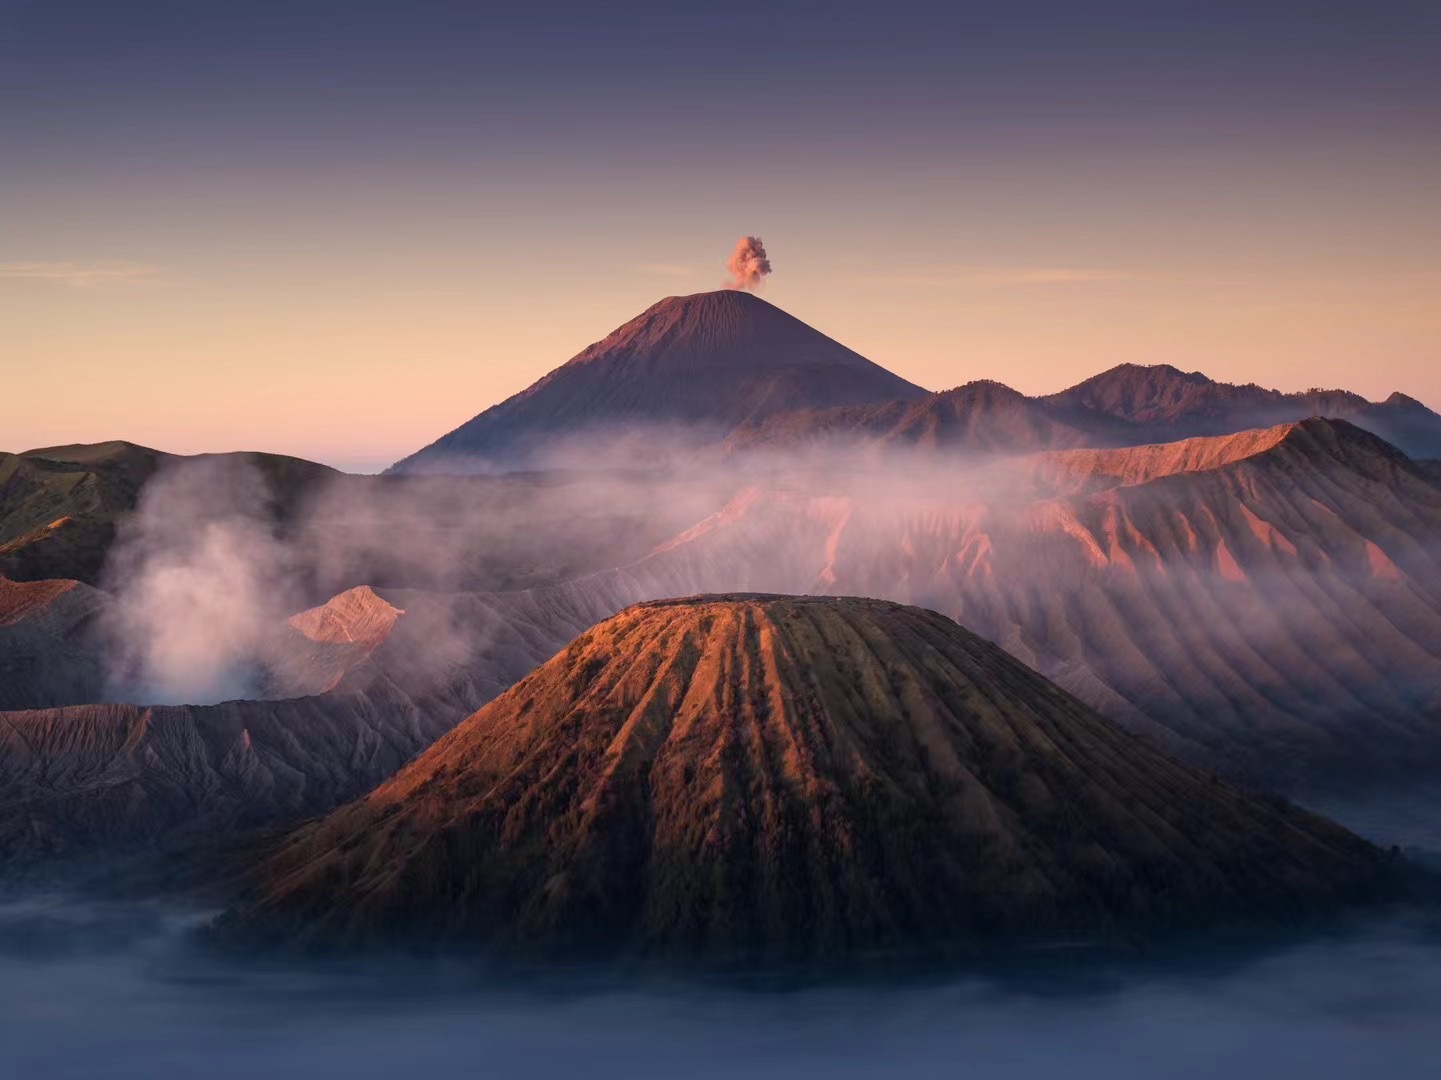 【印度尼西亚】日惹世界遗产+泗水火山+巴厘岛度假+跳舞树摄影之旅